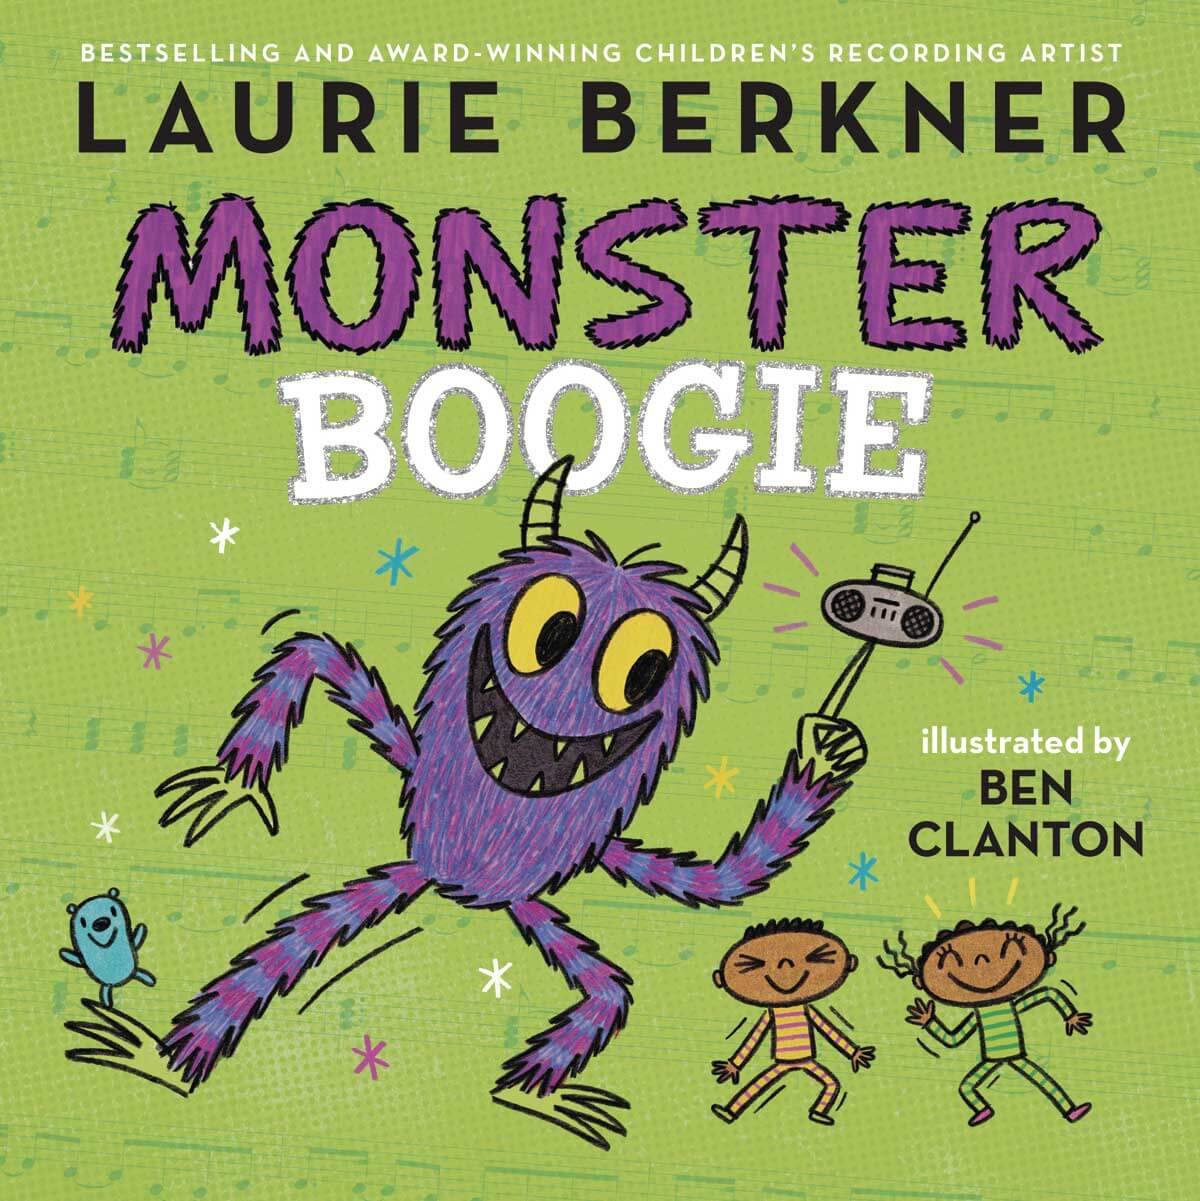 ‘Monster’ yuks: Laurie Berkner’s latest book is funny & raucous